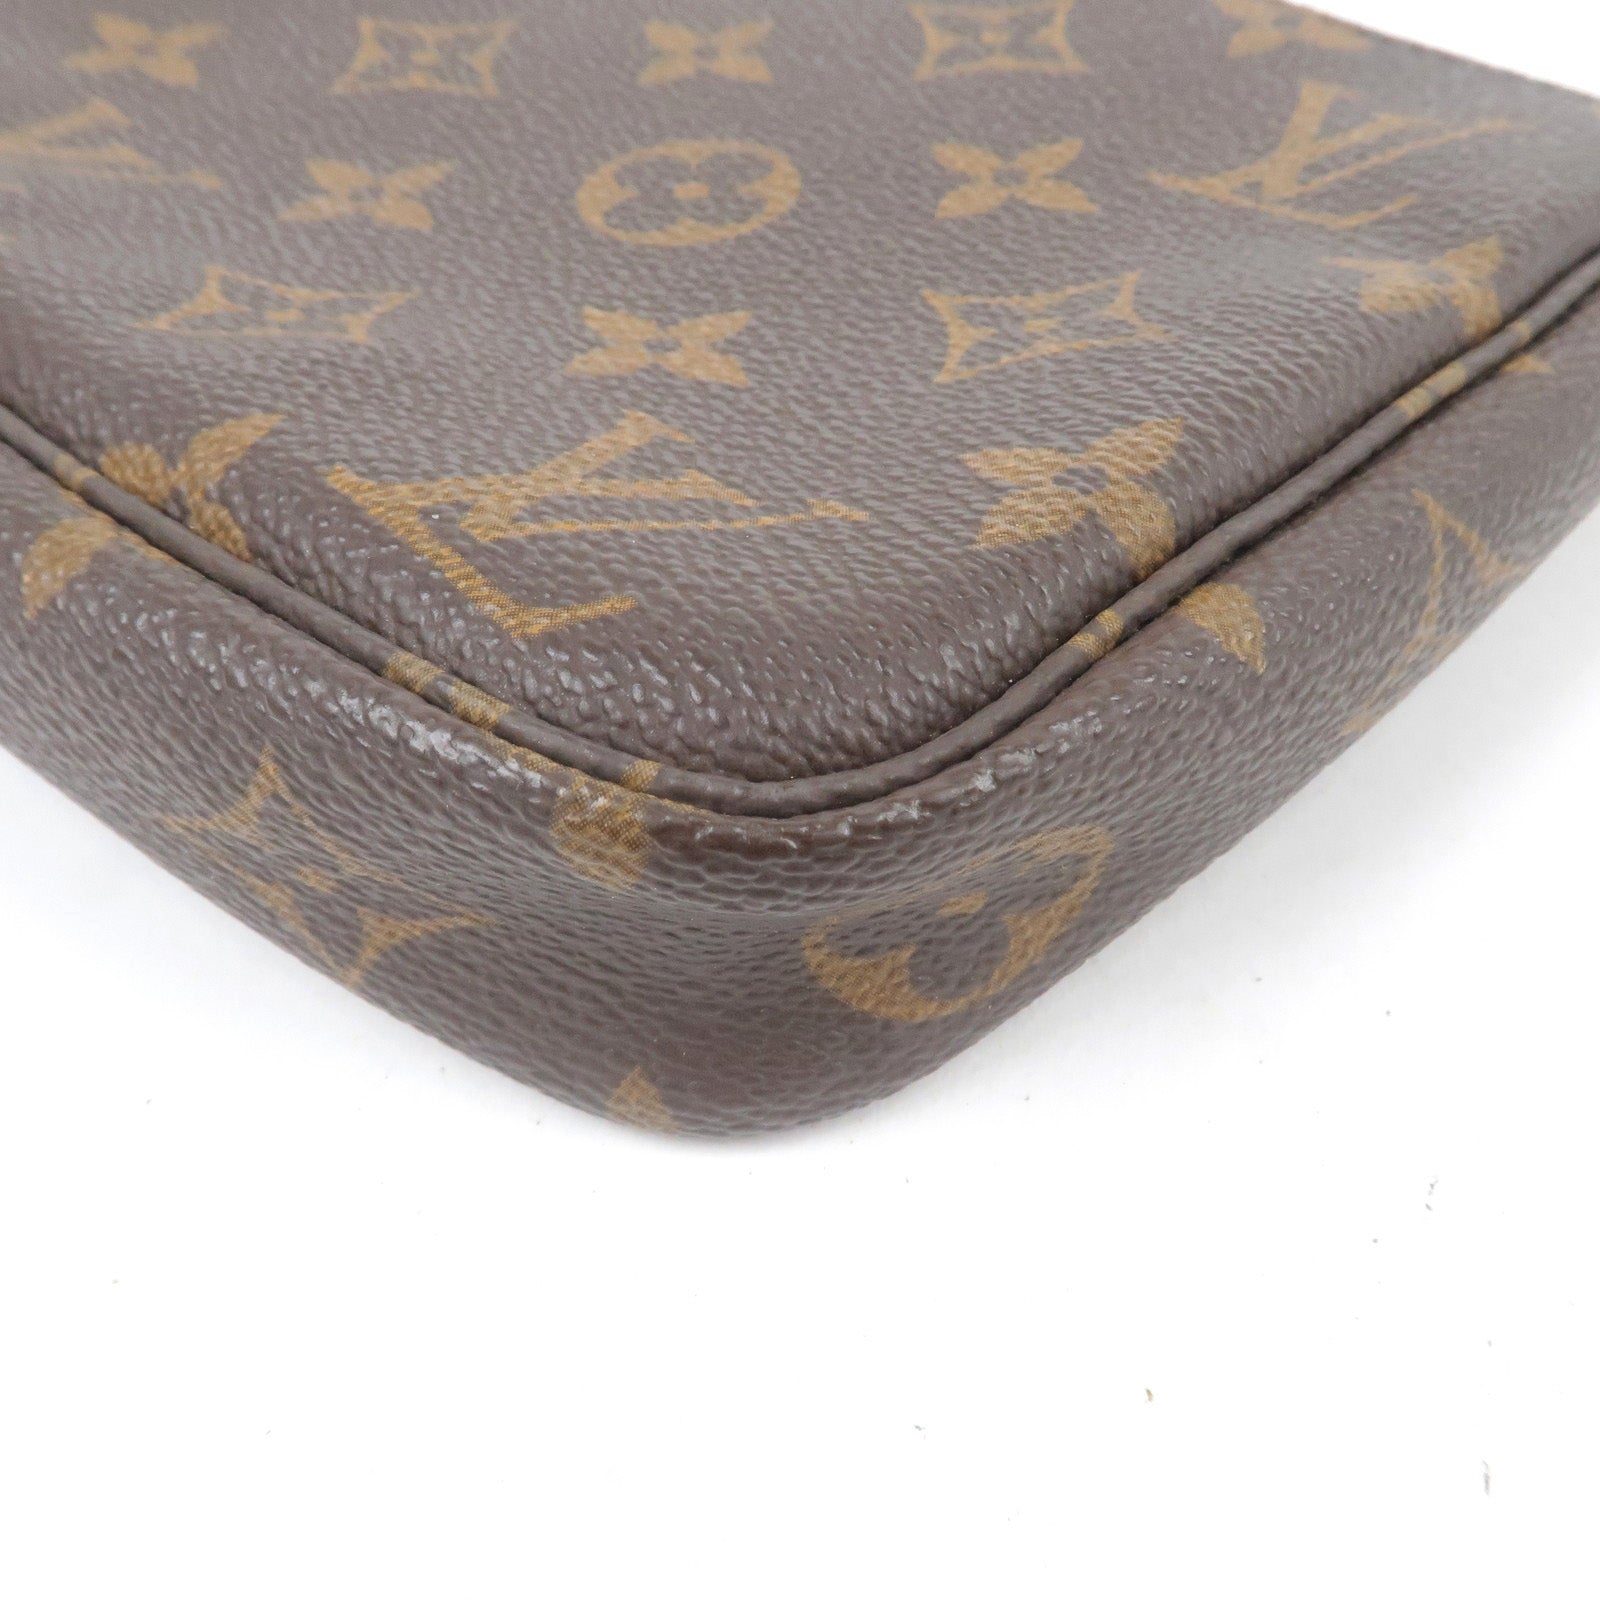 Vuitton - Accessoires - Louis Vuitton Naviglio shoulder bag in ebene damier  canvas and brown leather - J52314 – Louis Vuitton pre - owned Saintonge  camera bag - M51980 - Monogram - Pochette - Louis - Pouch